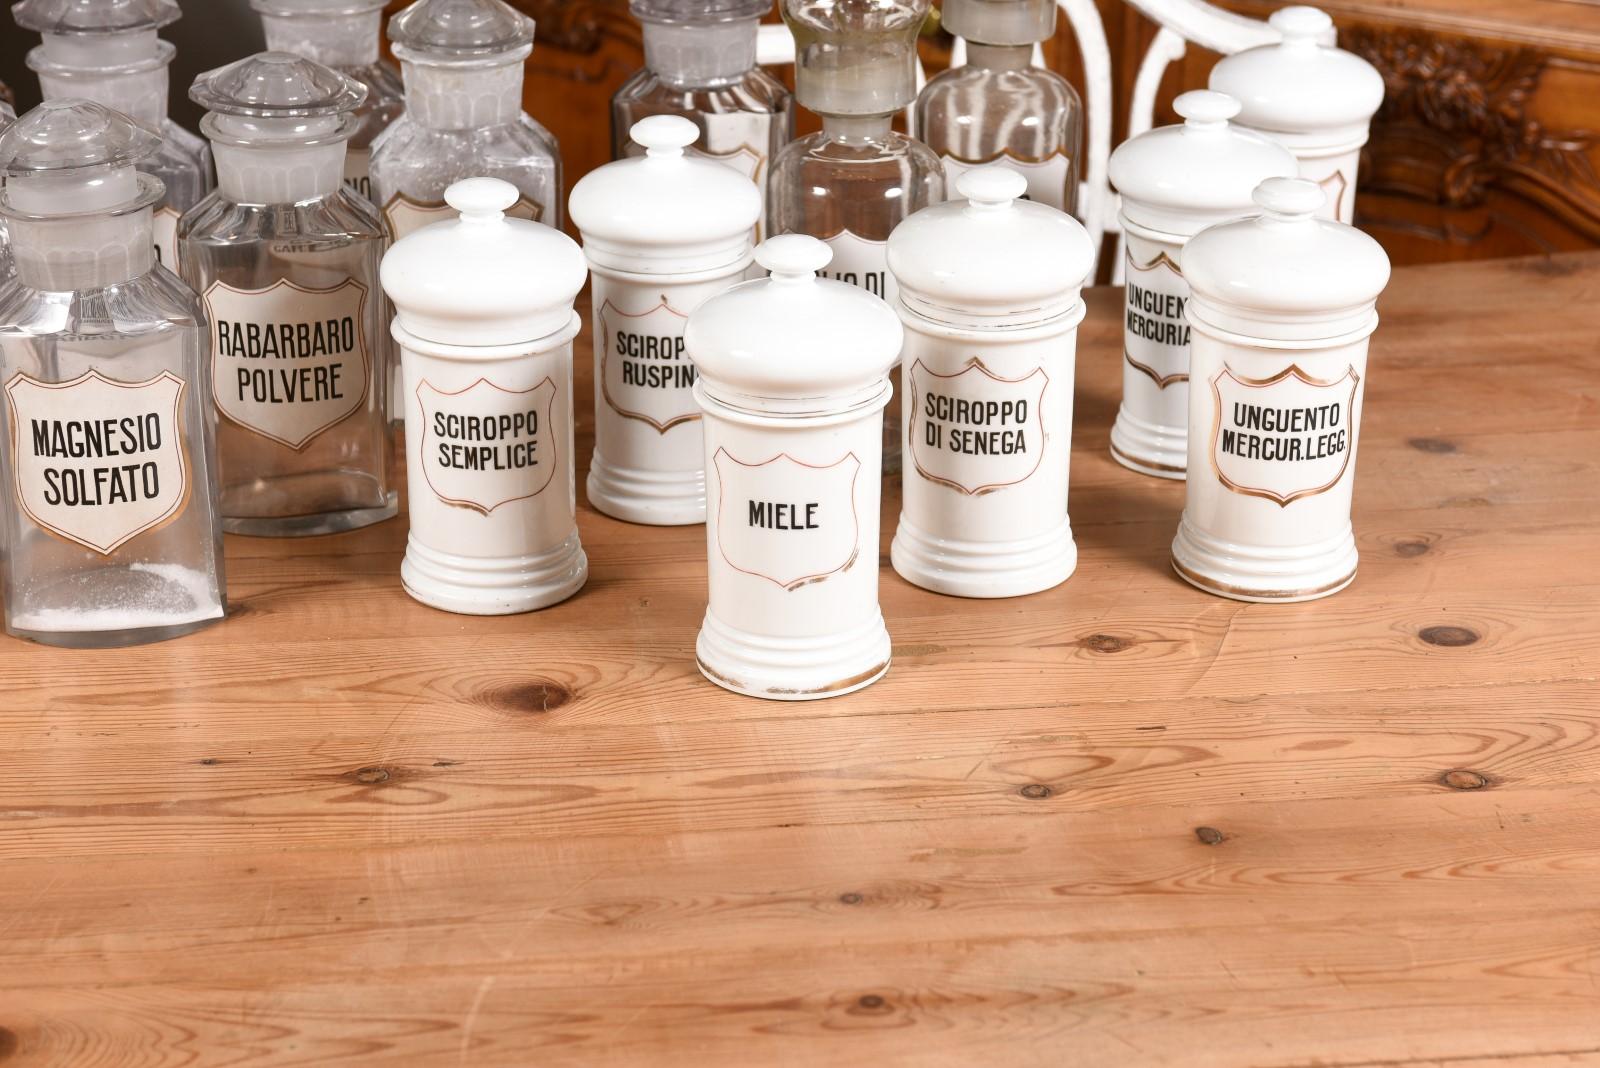 36 Apothekergefäße aus italienischem Glas oder Porzellan im Vintage-Stil mit Etiketten, verkauft pro Stück im Angebot 2